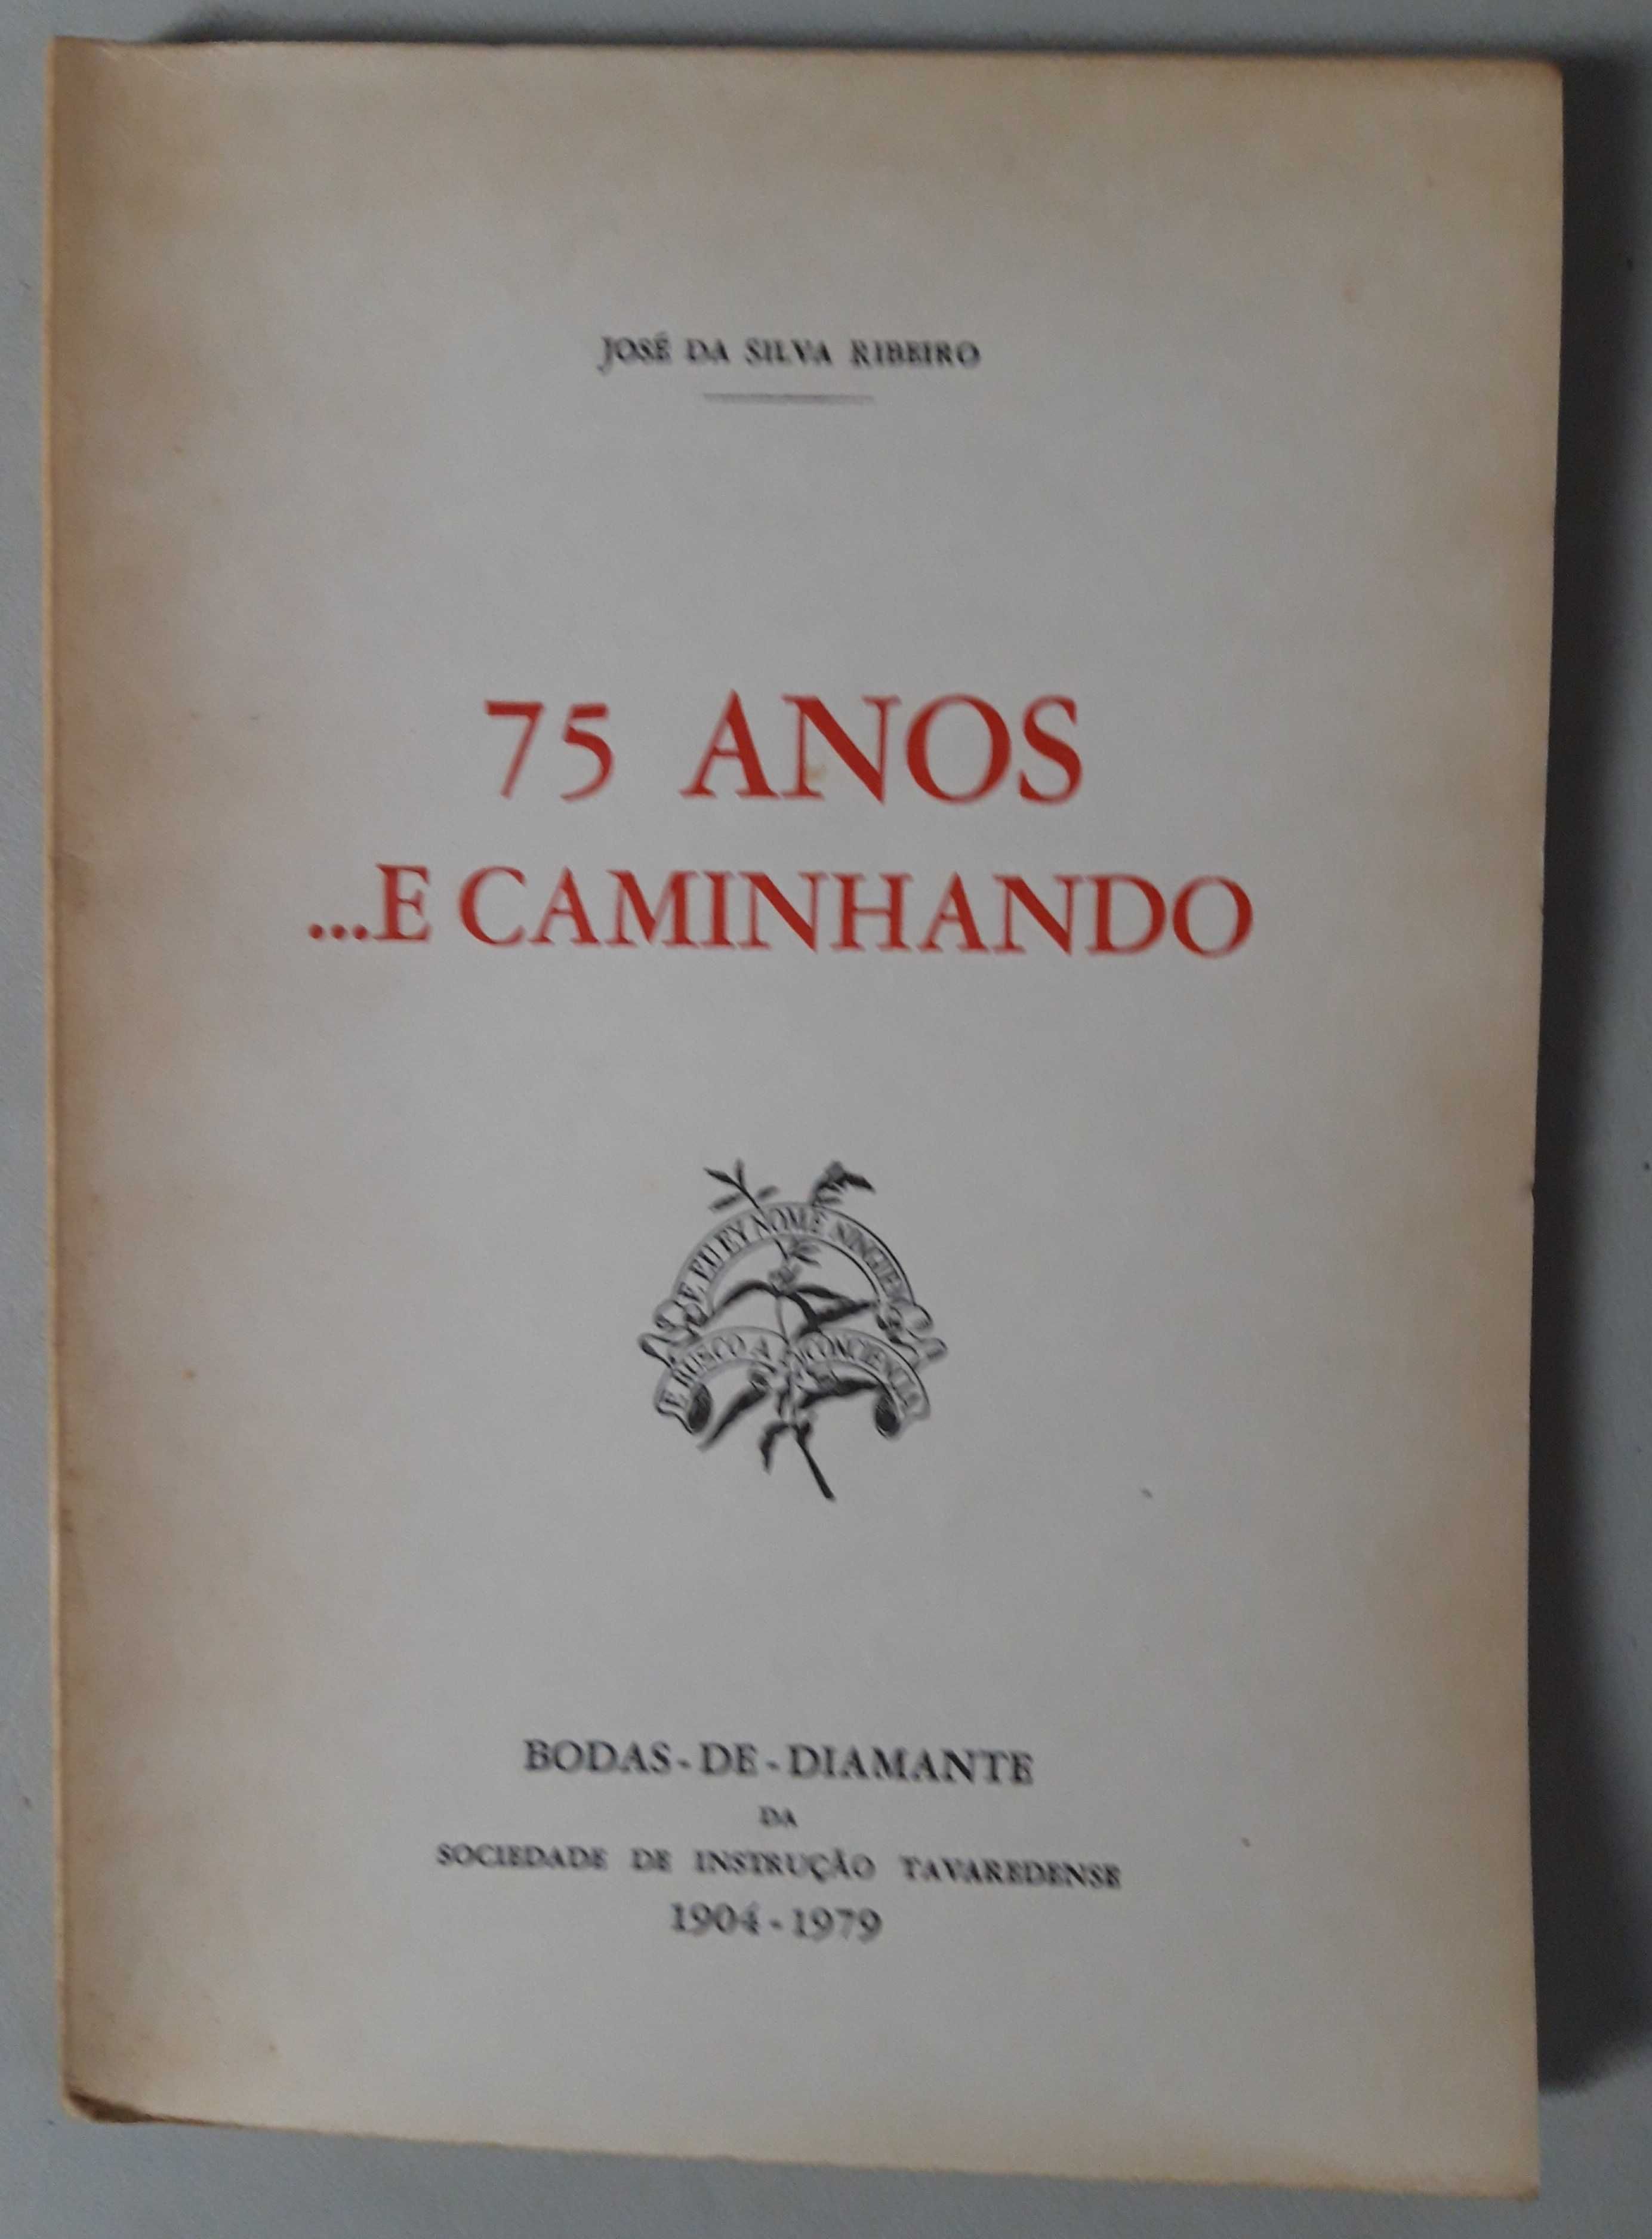 Livro Ref Par 2- José da Silva Ribeiro - 75 Anos ...E Caminhando